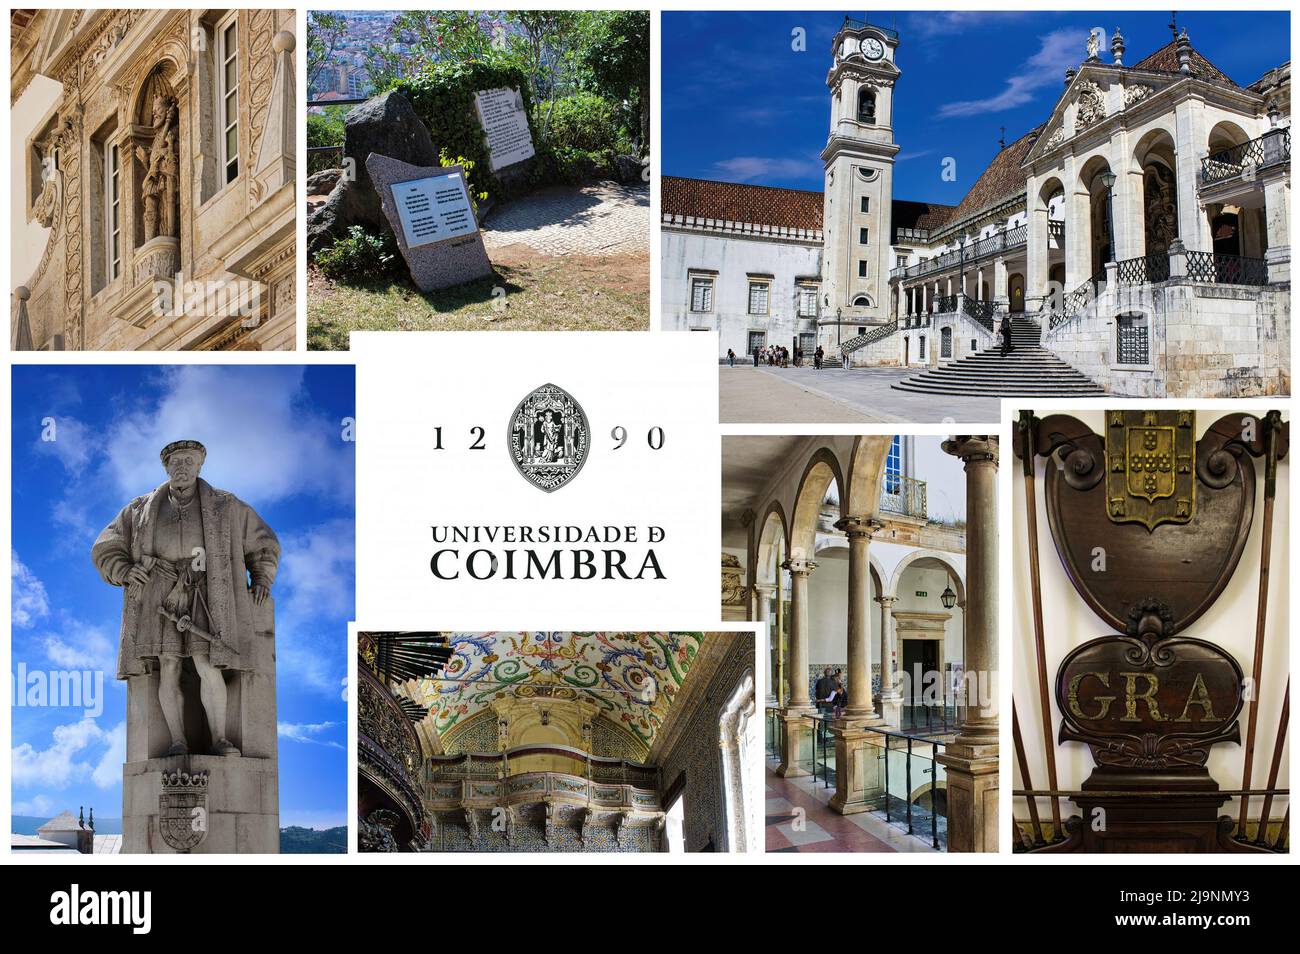 Die Universität von Coimbra (Portugal) eine der ältesten und renommiertesten Universitäten Europas ist Teil des UNESCO-Erbes. Stockfoto